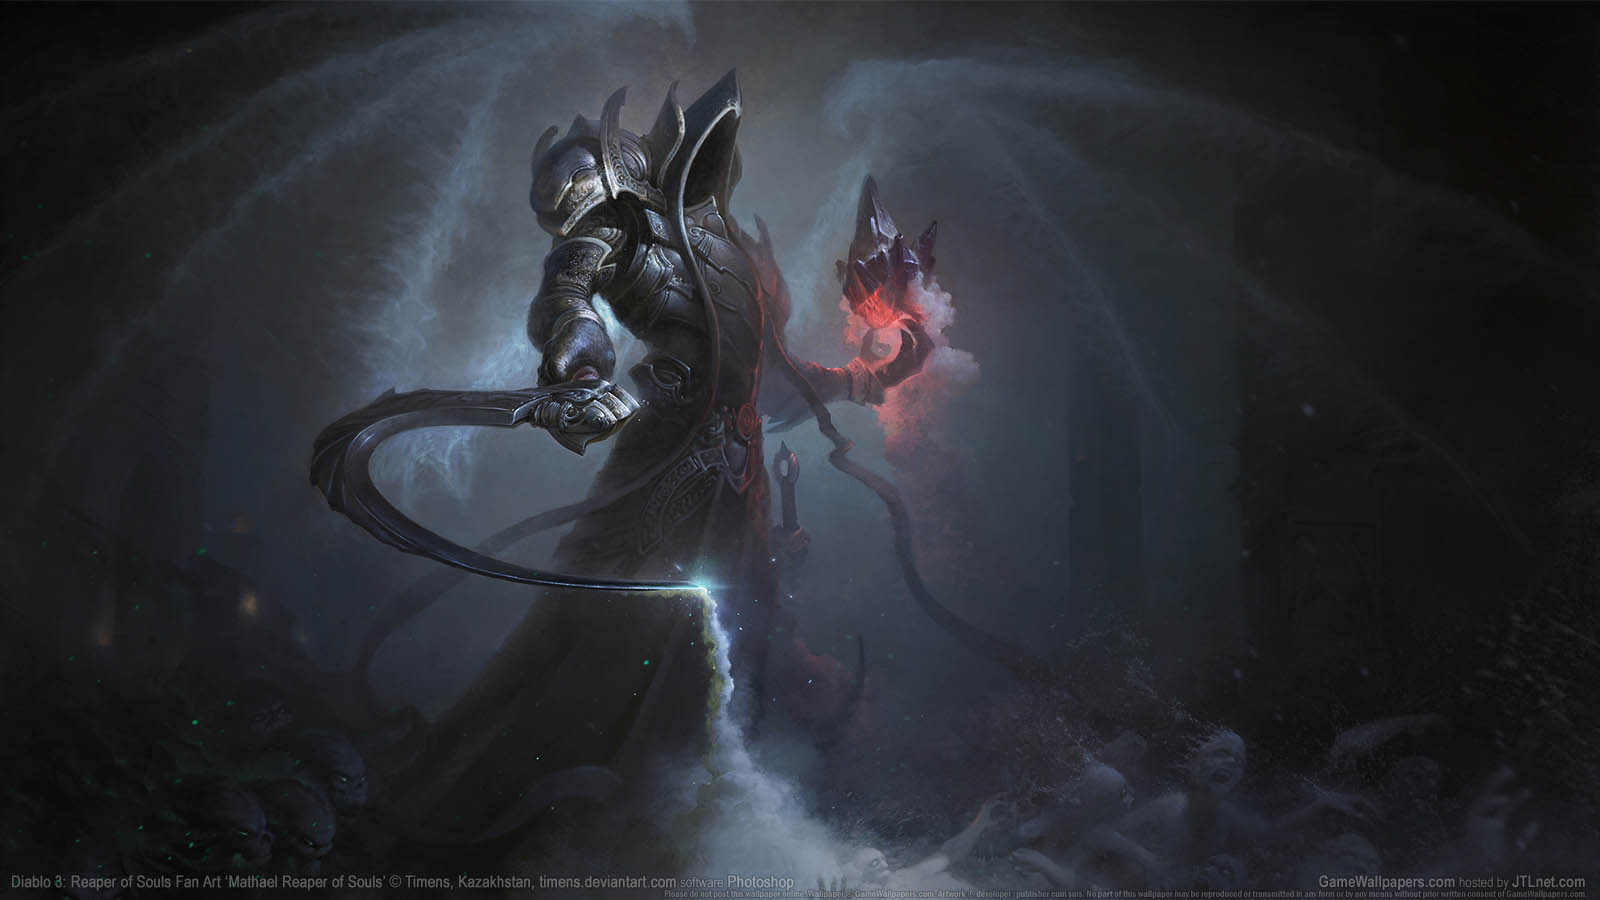 Diablo 3: Reaper of Souls Fan Art wallpaper 11 1600x900